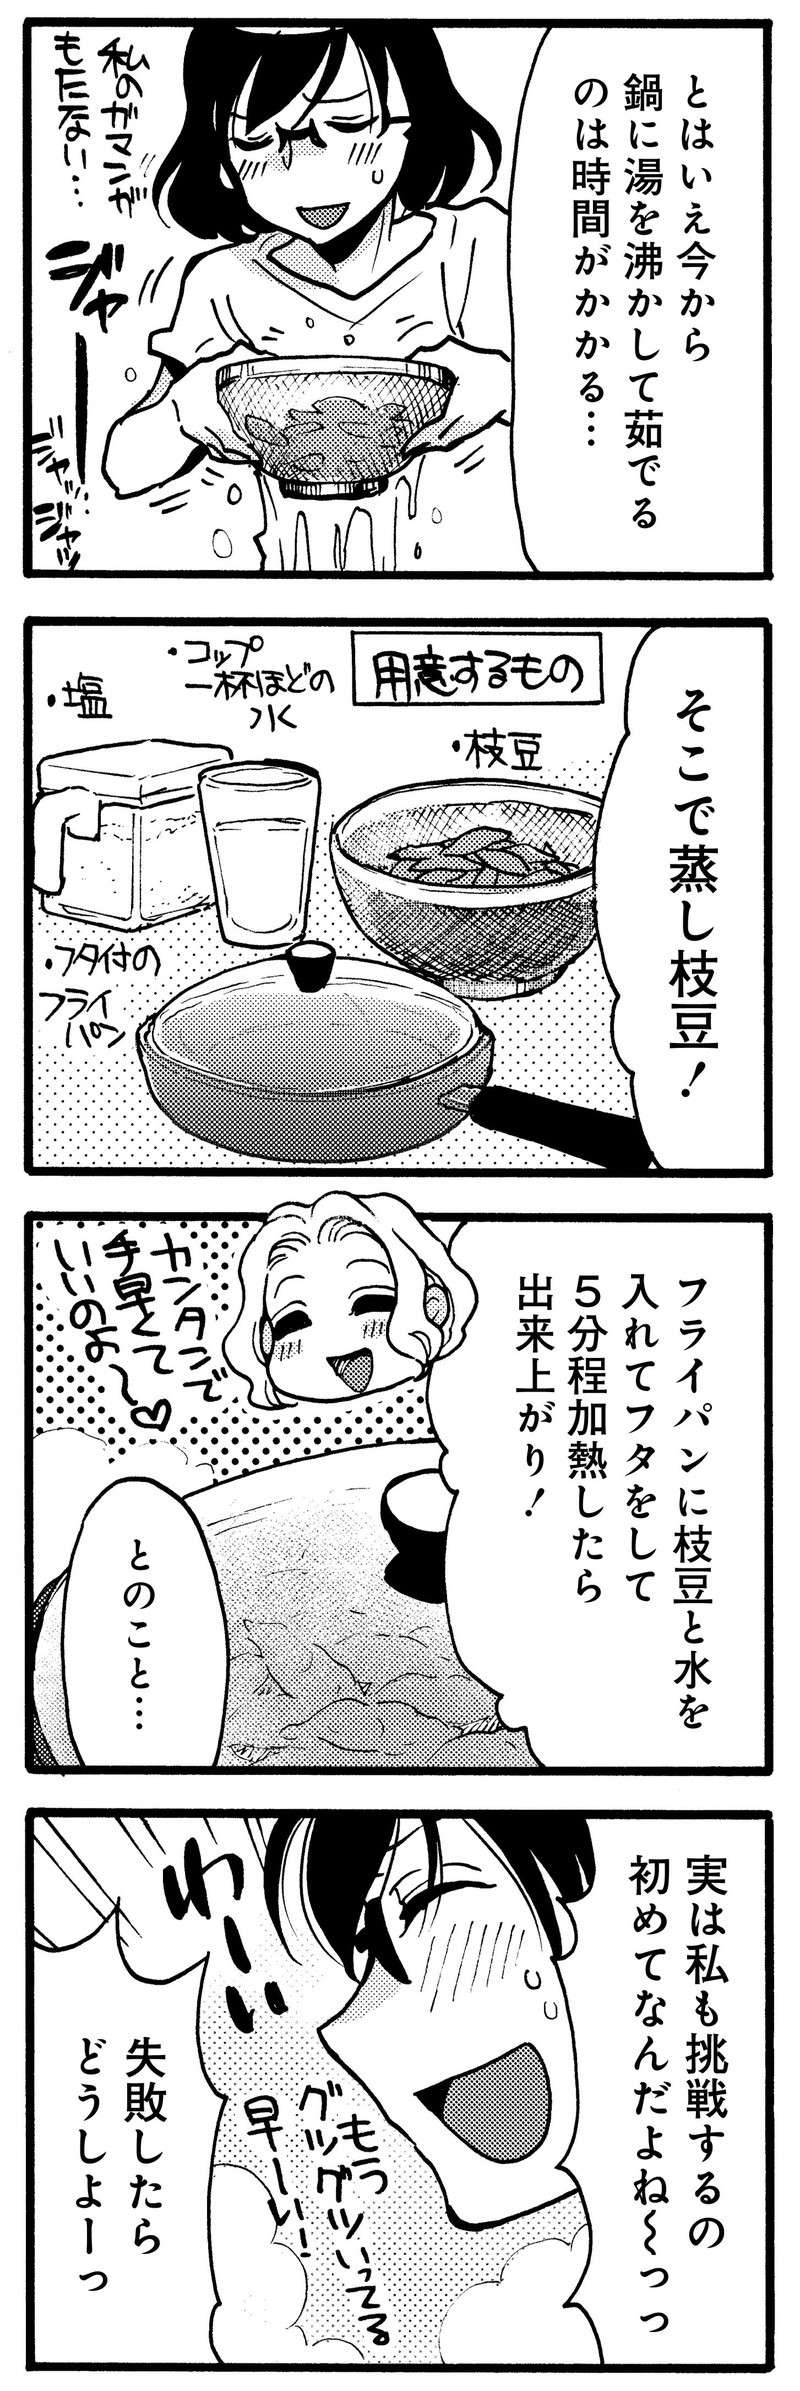 「今度から枝豆はコレで」フライパンで作る「蒸し枝豆」はビールによく合って最高！／のみじょし9 nomijoshi9_P006_2.jpg